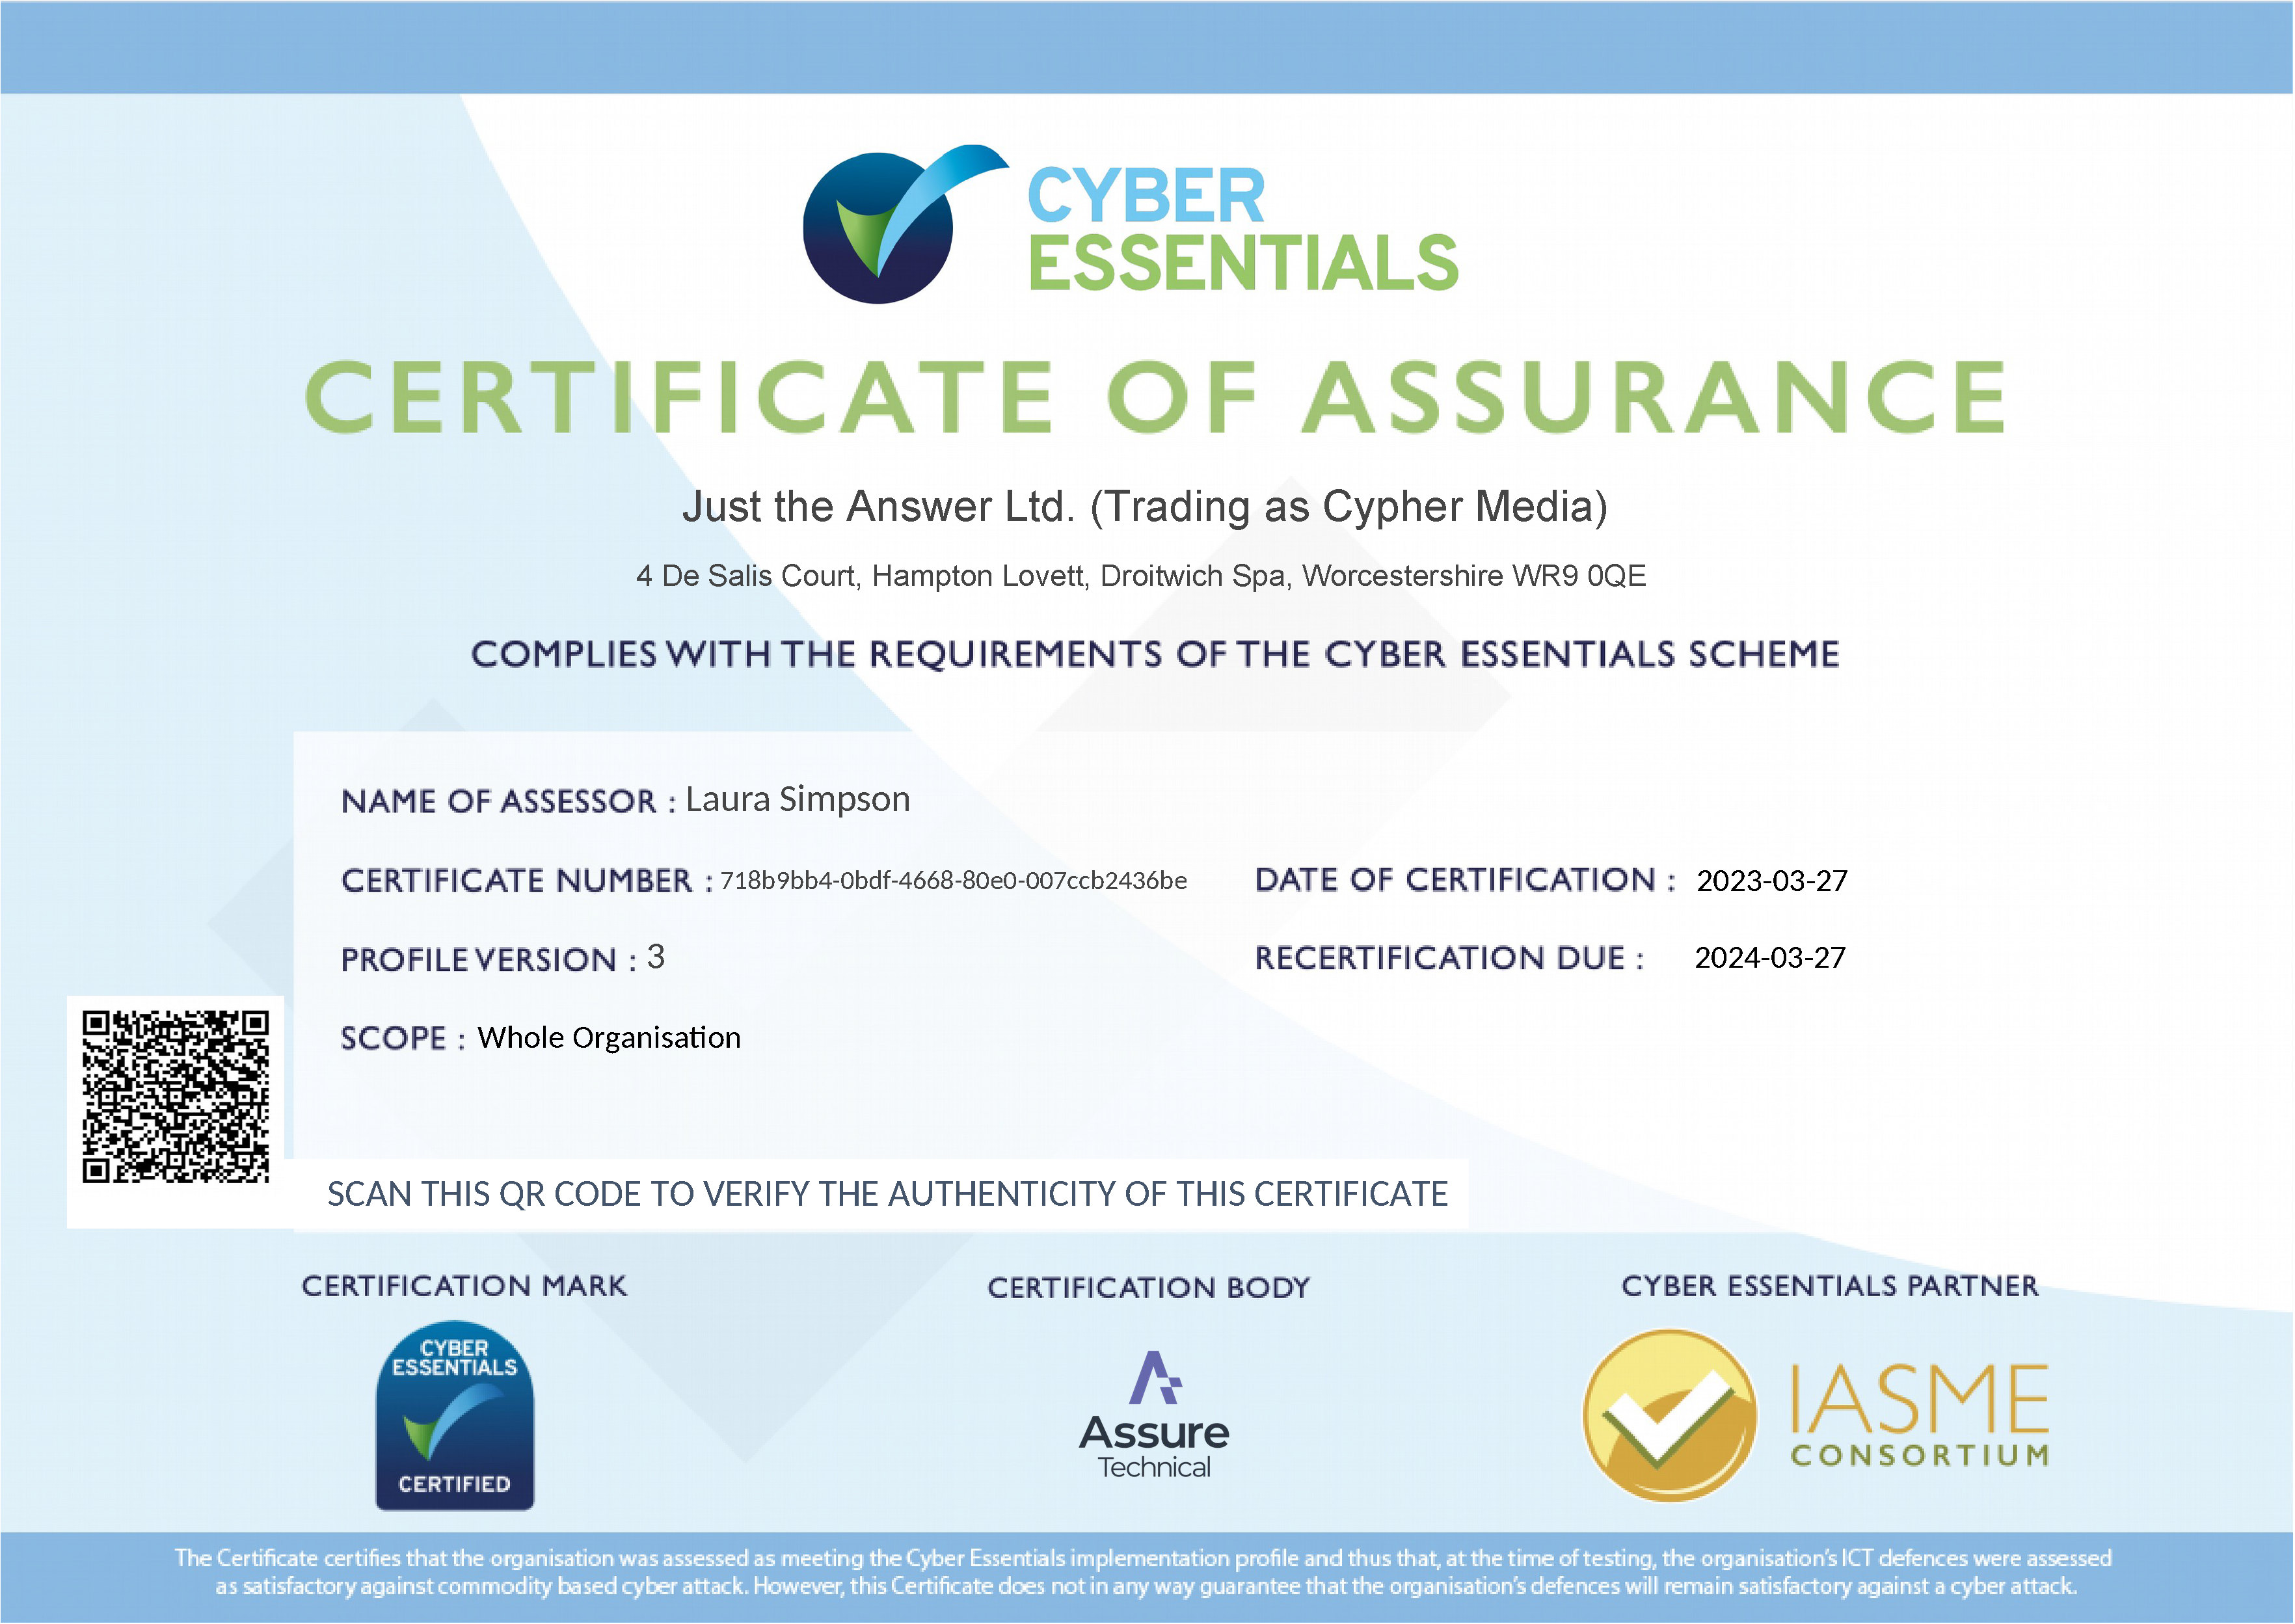 We're Cyber Essentials Recertified!